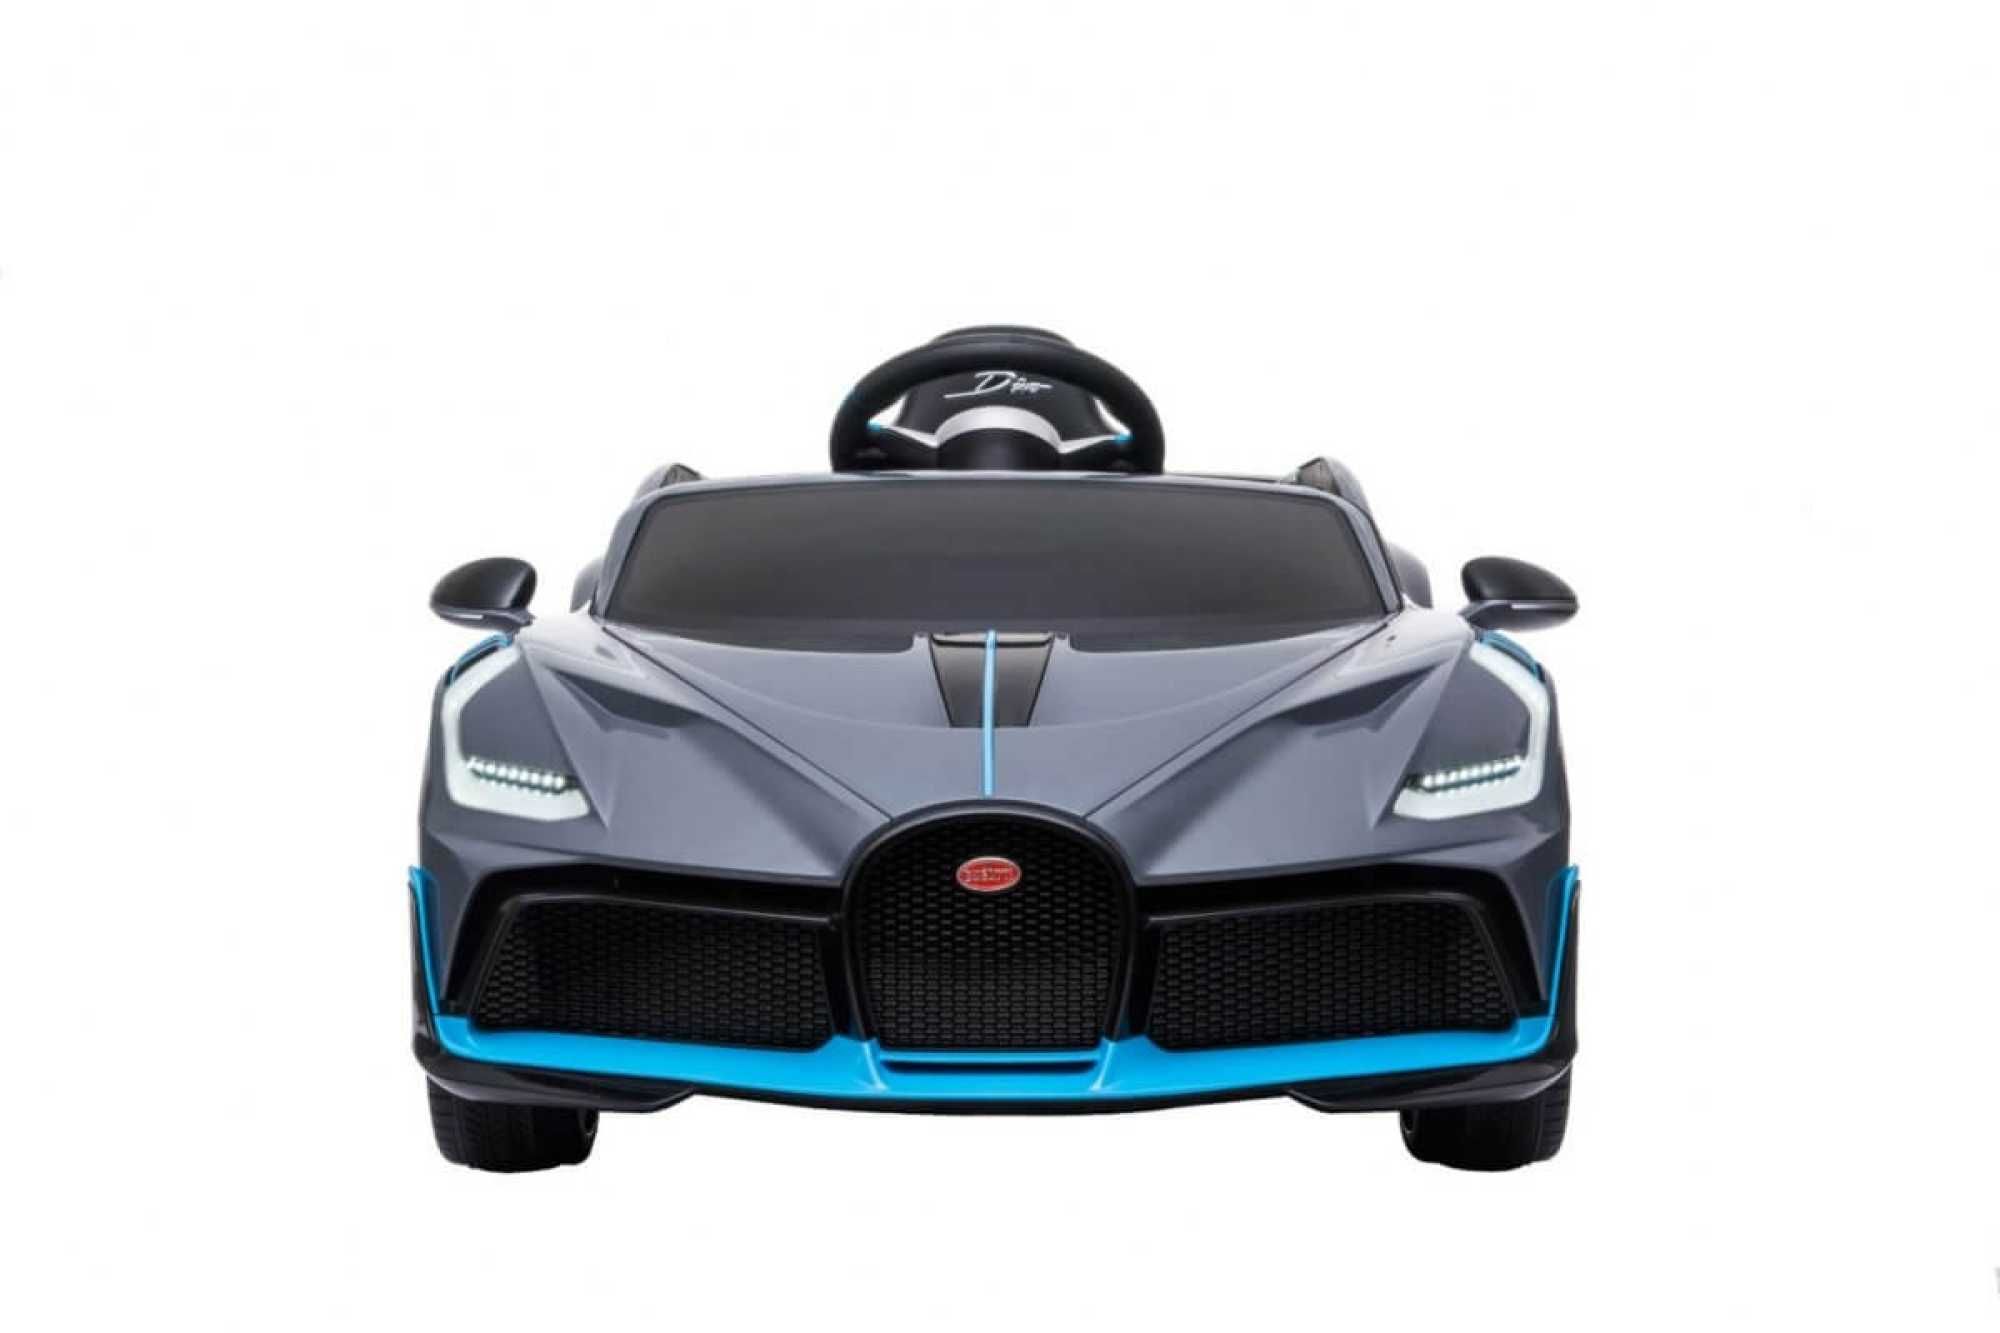 Masinuta electrica copii 1-6 ani Bugatti Divo R. Moi, Scaun Piele #Gri